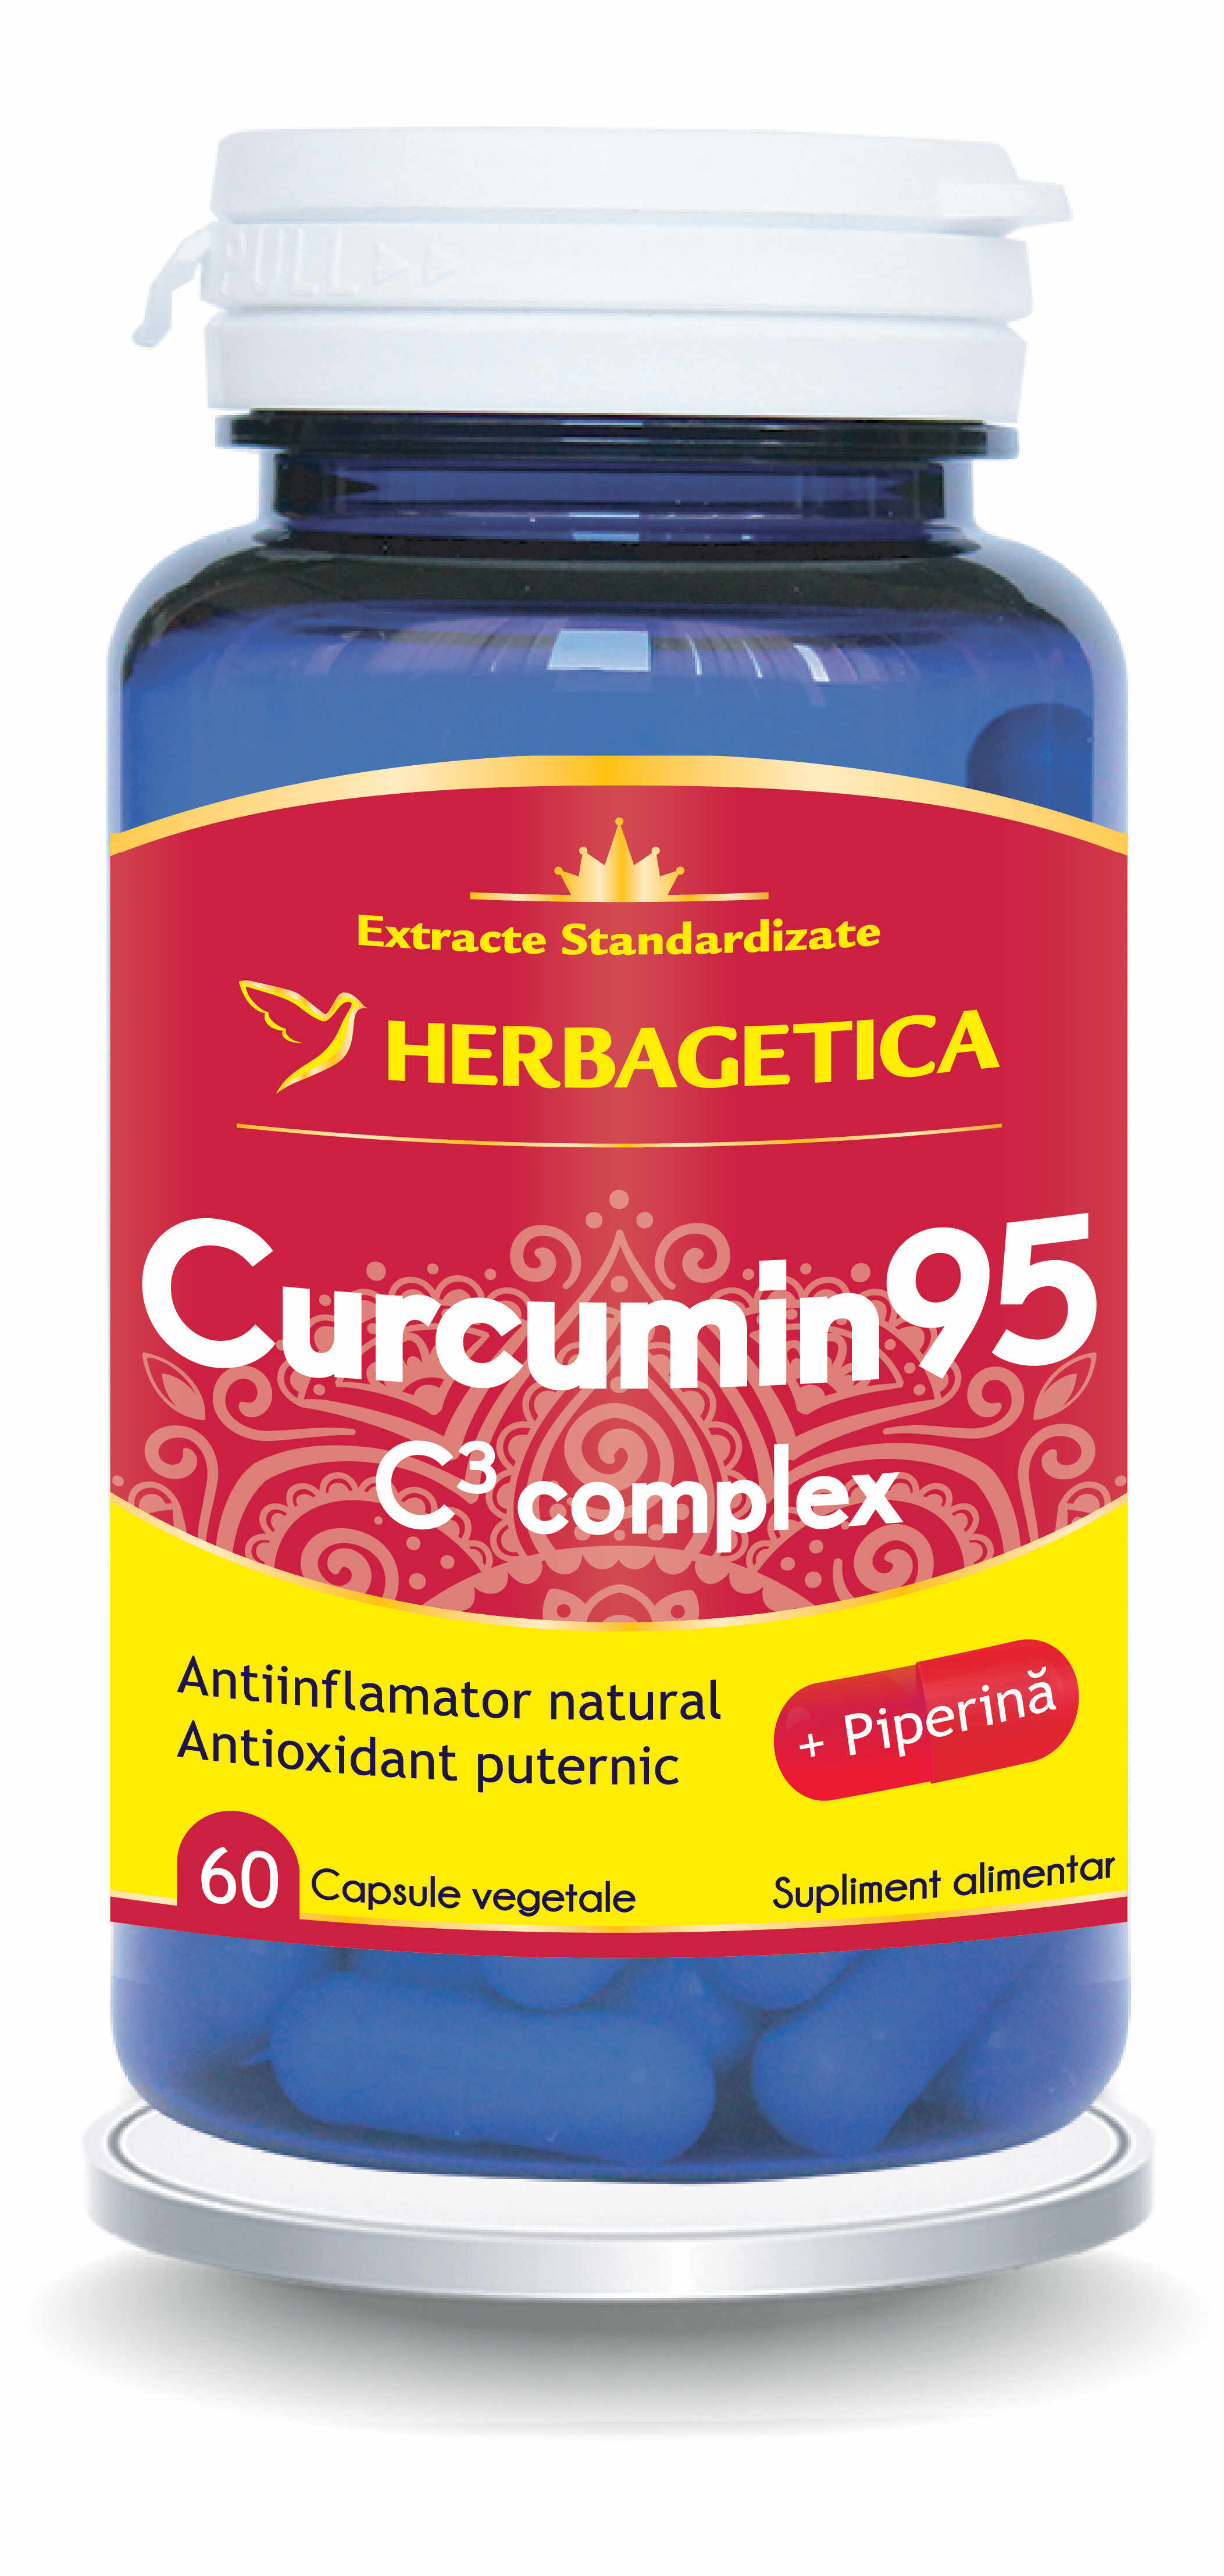 Herbagetica Curcumin95 C3 Complex x 60 capsule